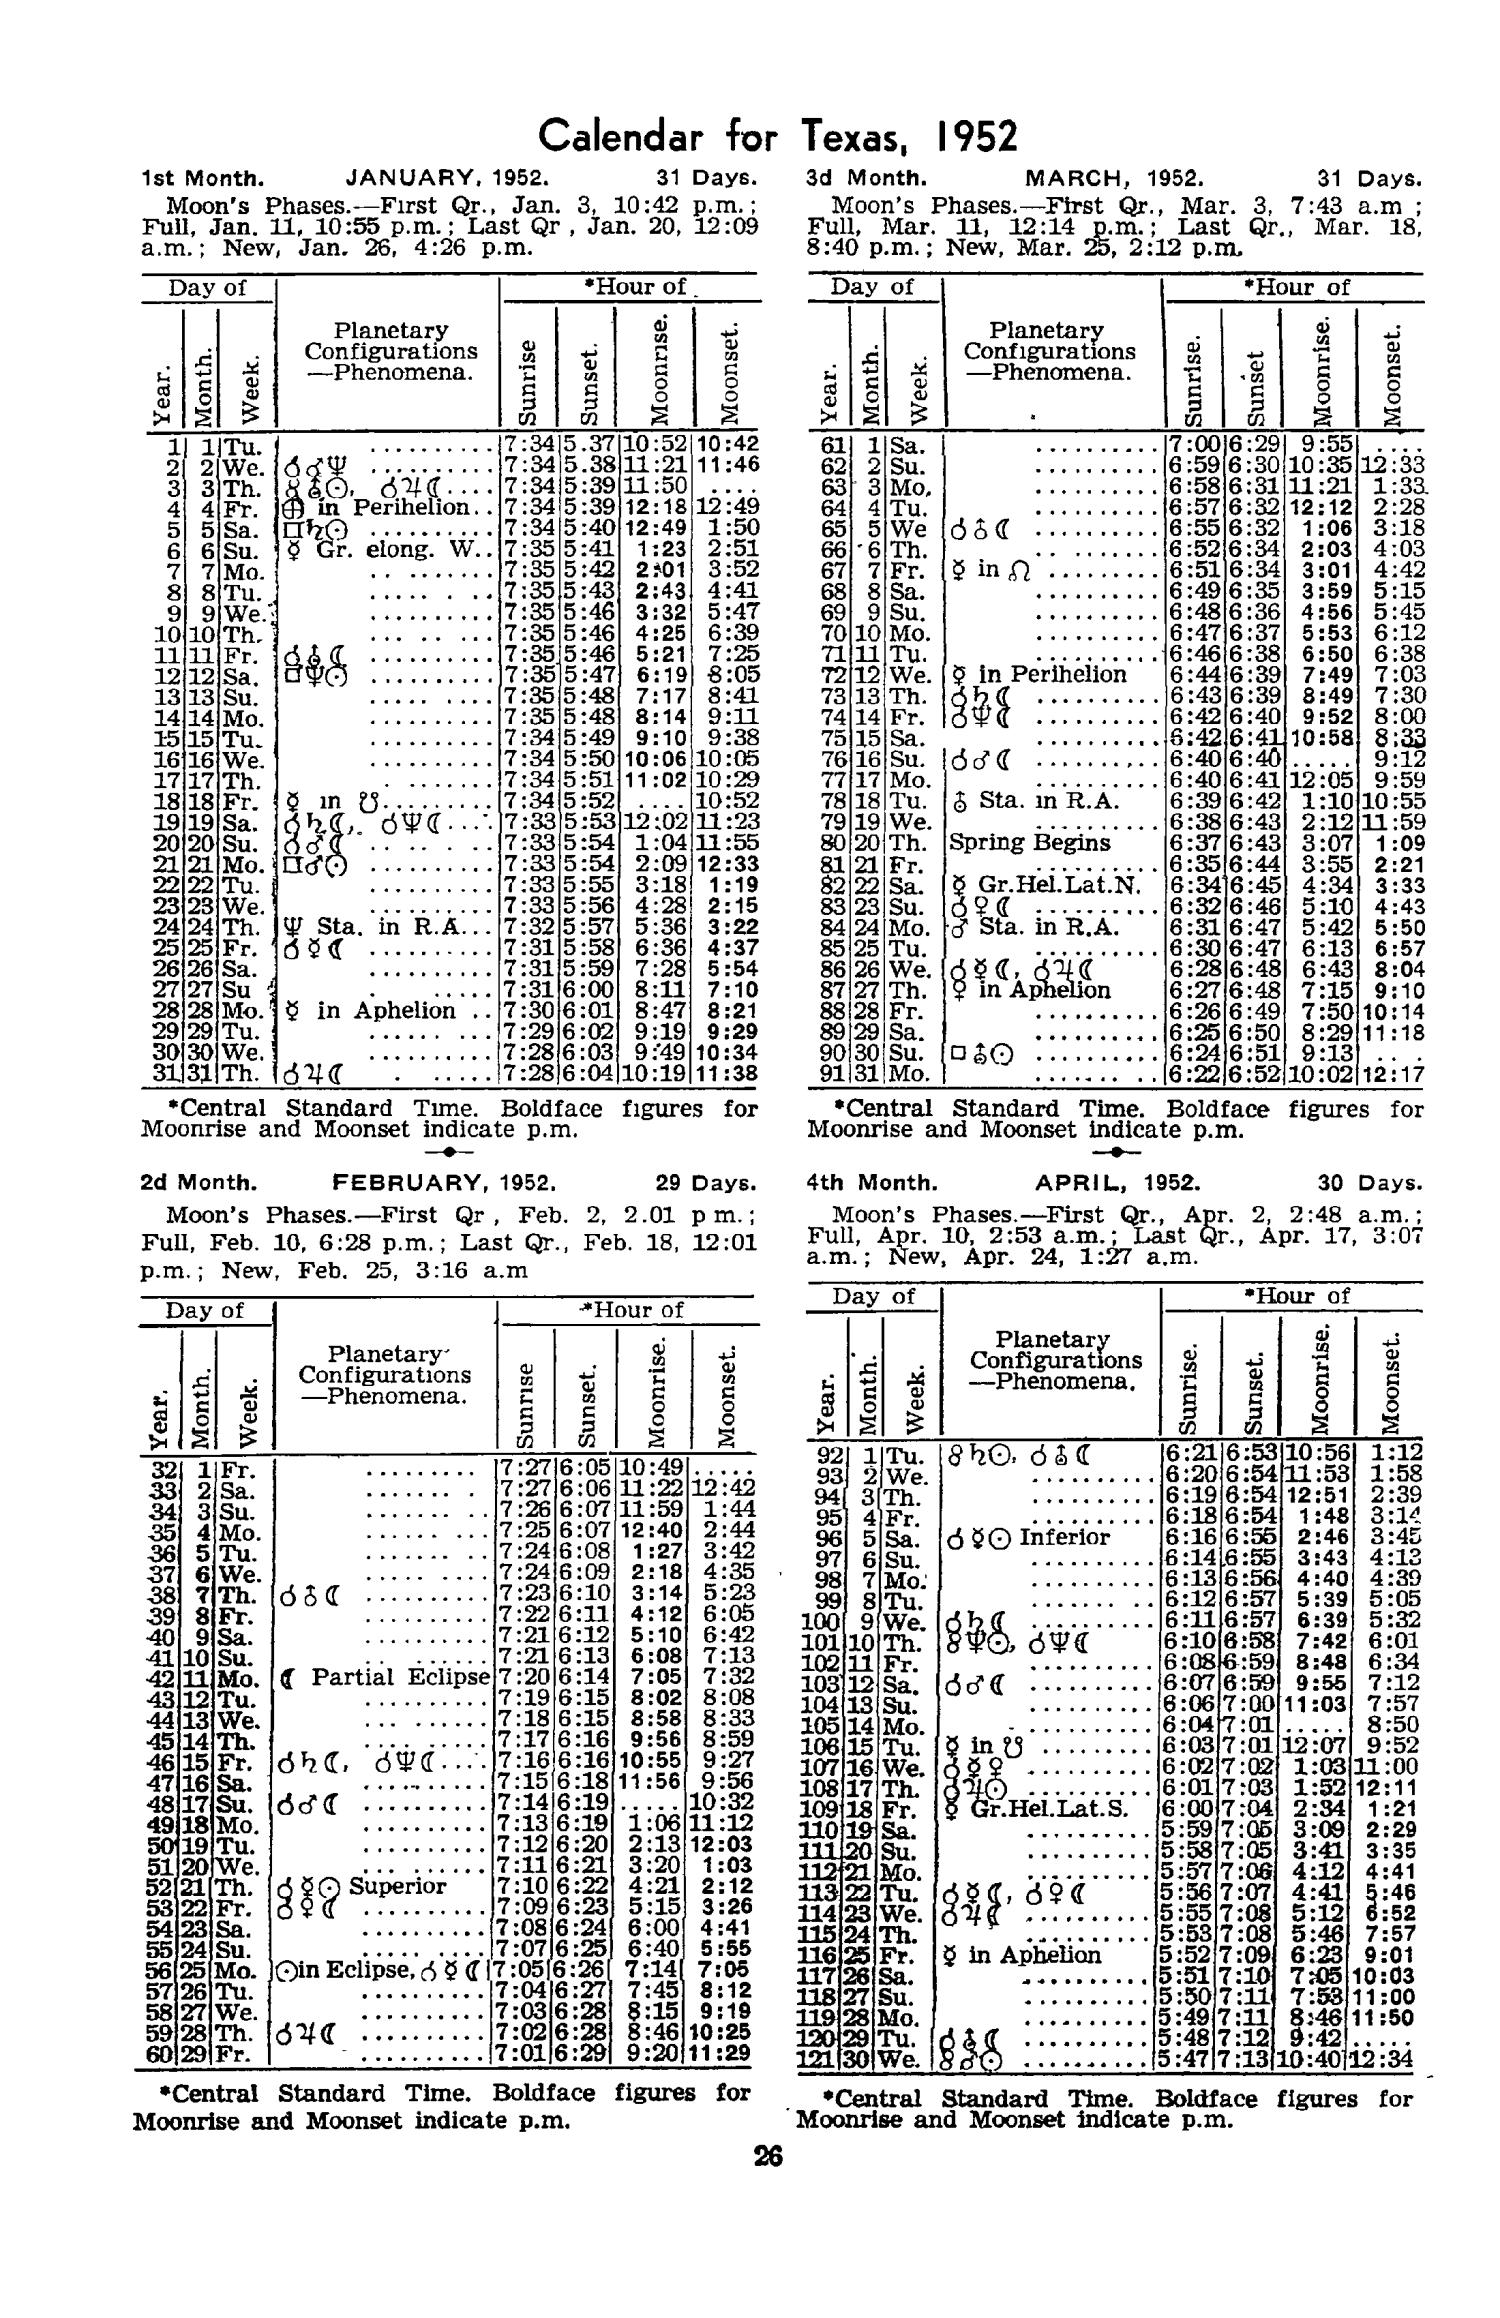 Texas Almanac, 1952-1953
                                                
                                                    26
                                                